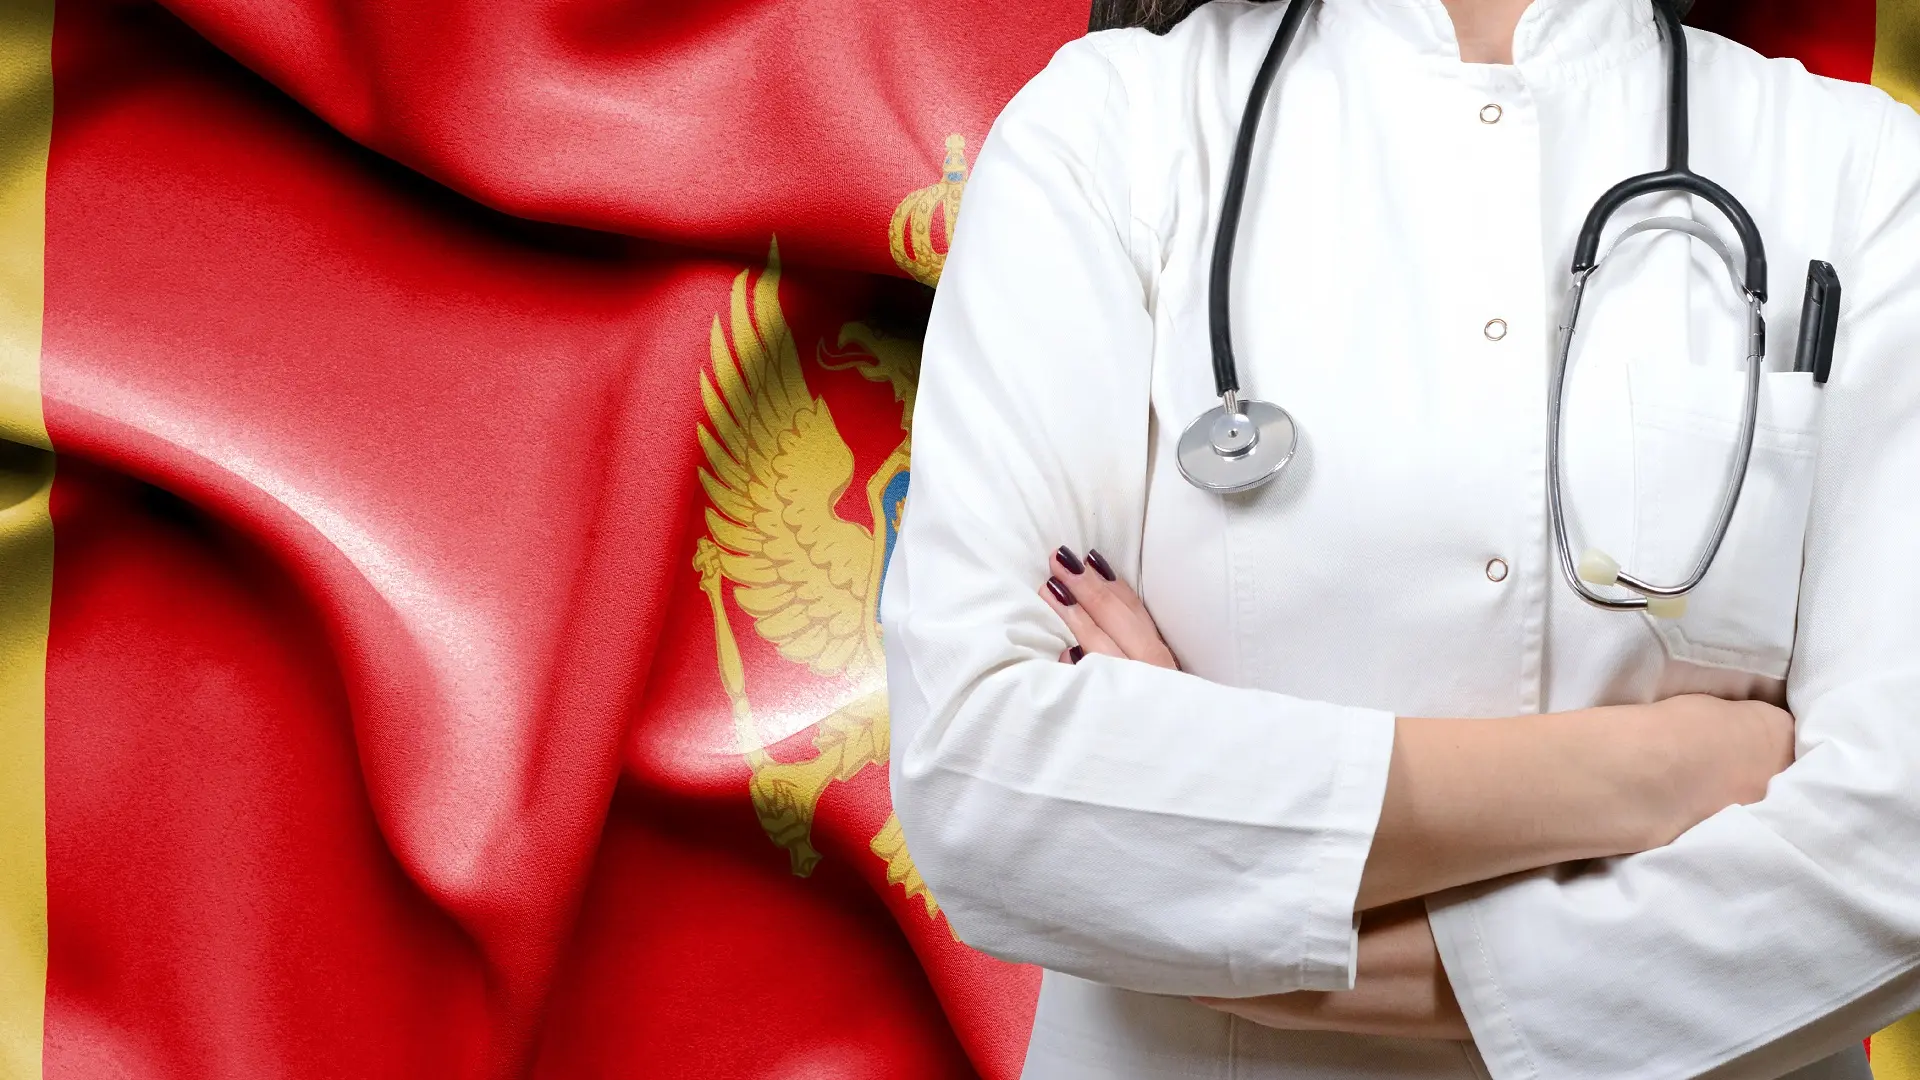 zdravstvo zdravstveni sistem u crnoj gori, crna gora, crnogorska zastava, crnogorski doktor doktorka - shutterstock-65ca3d0b33bc9.webp